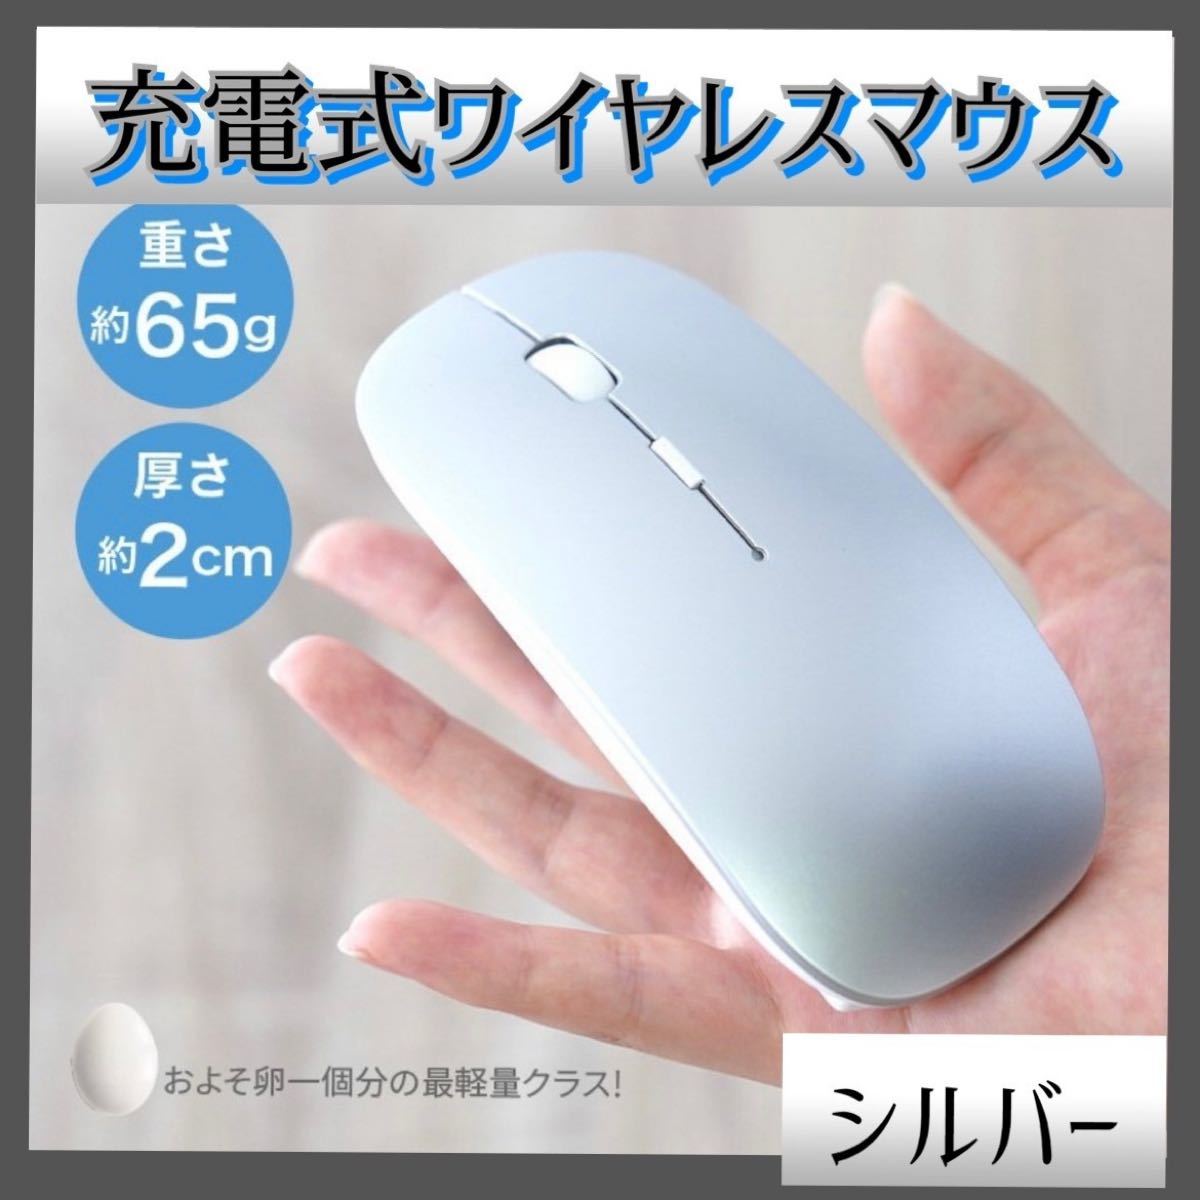 ワイヤレスマウス 充電式 無線マウス 静音 USB